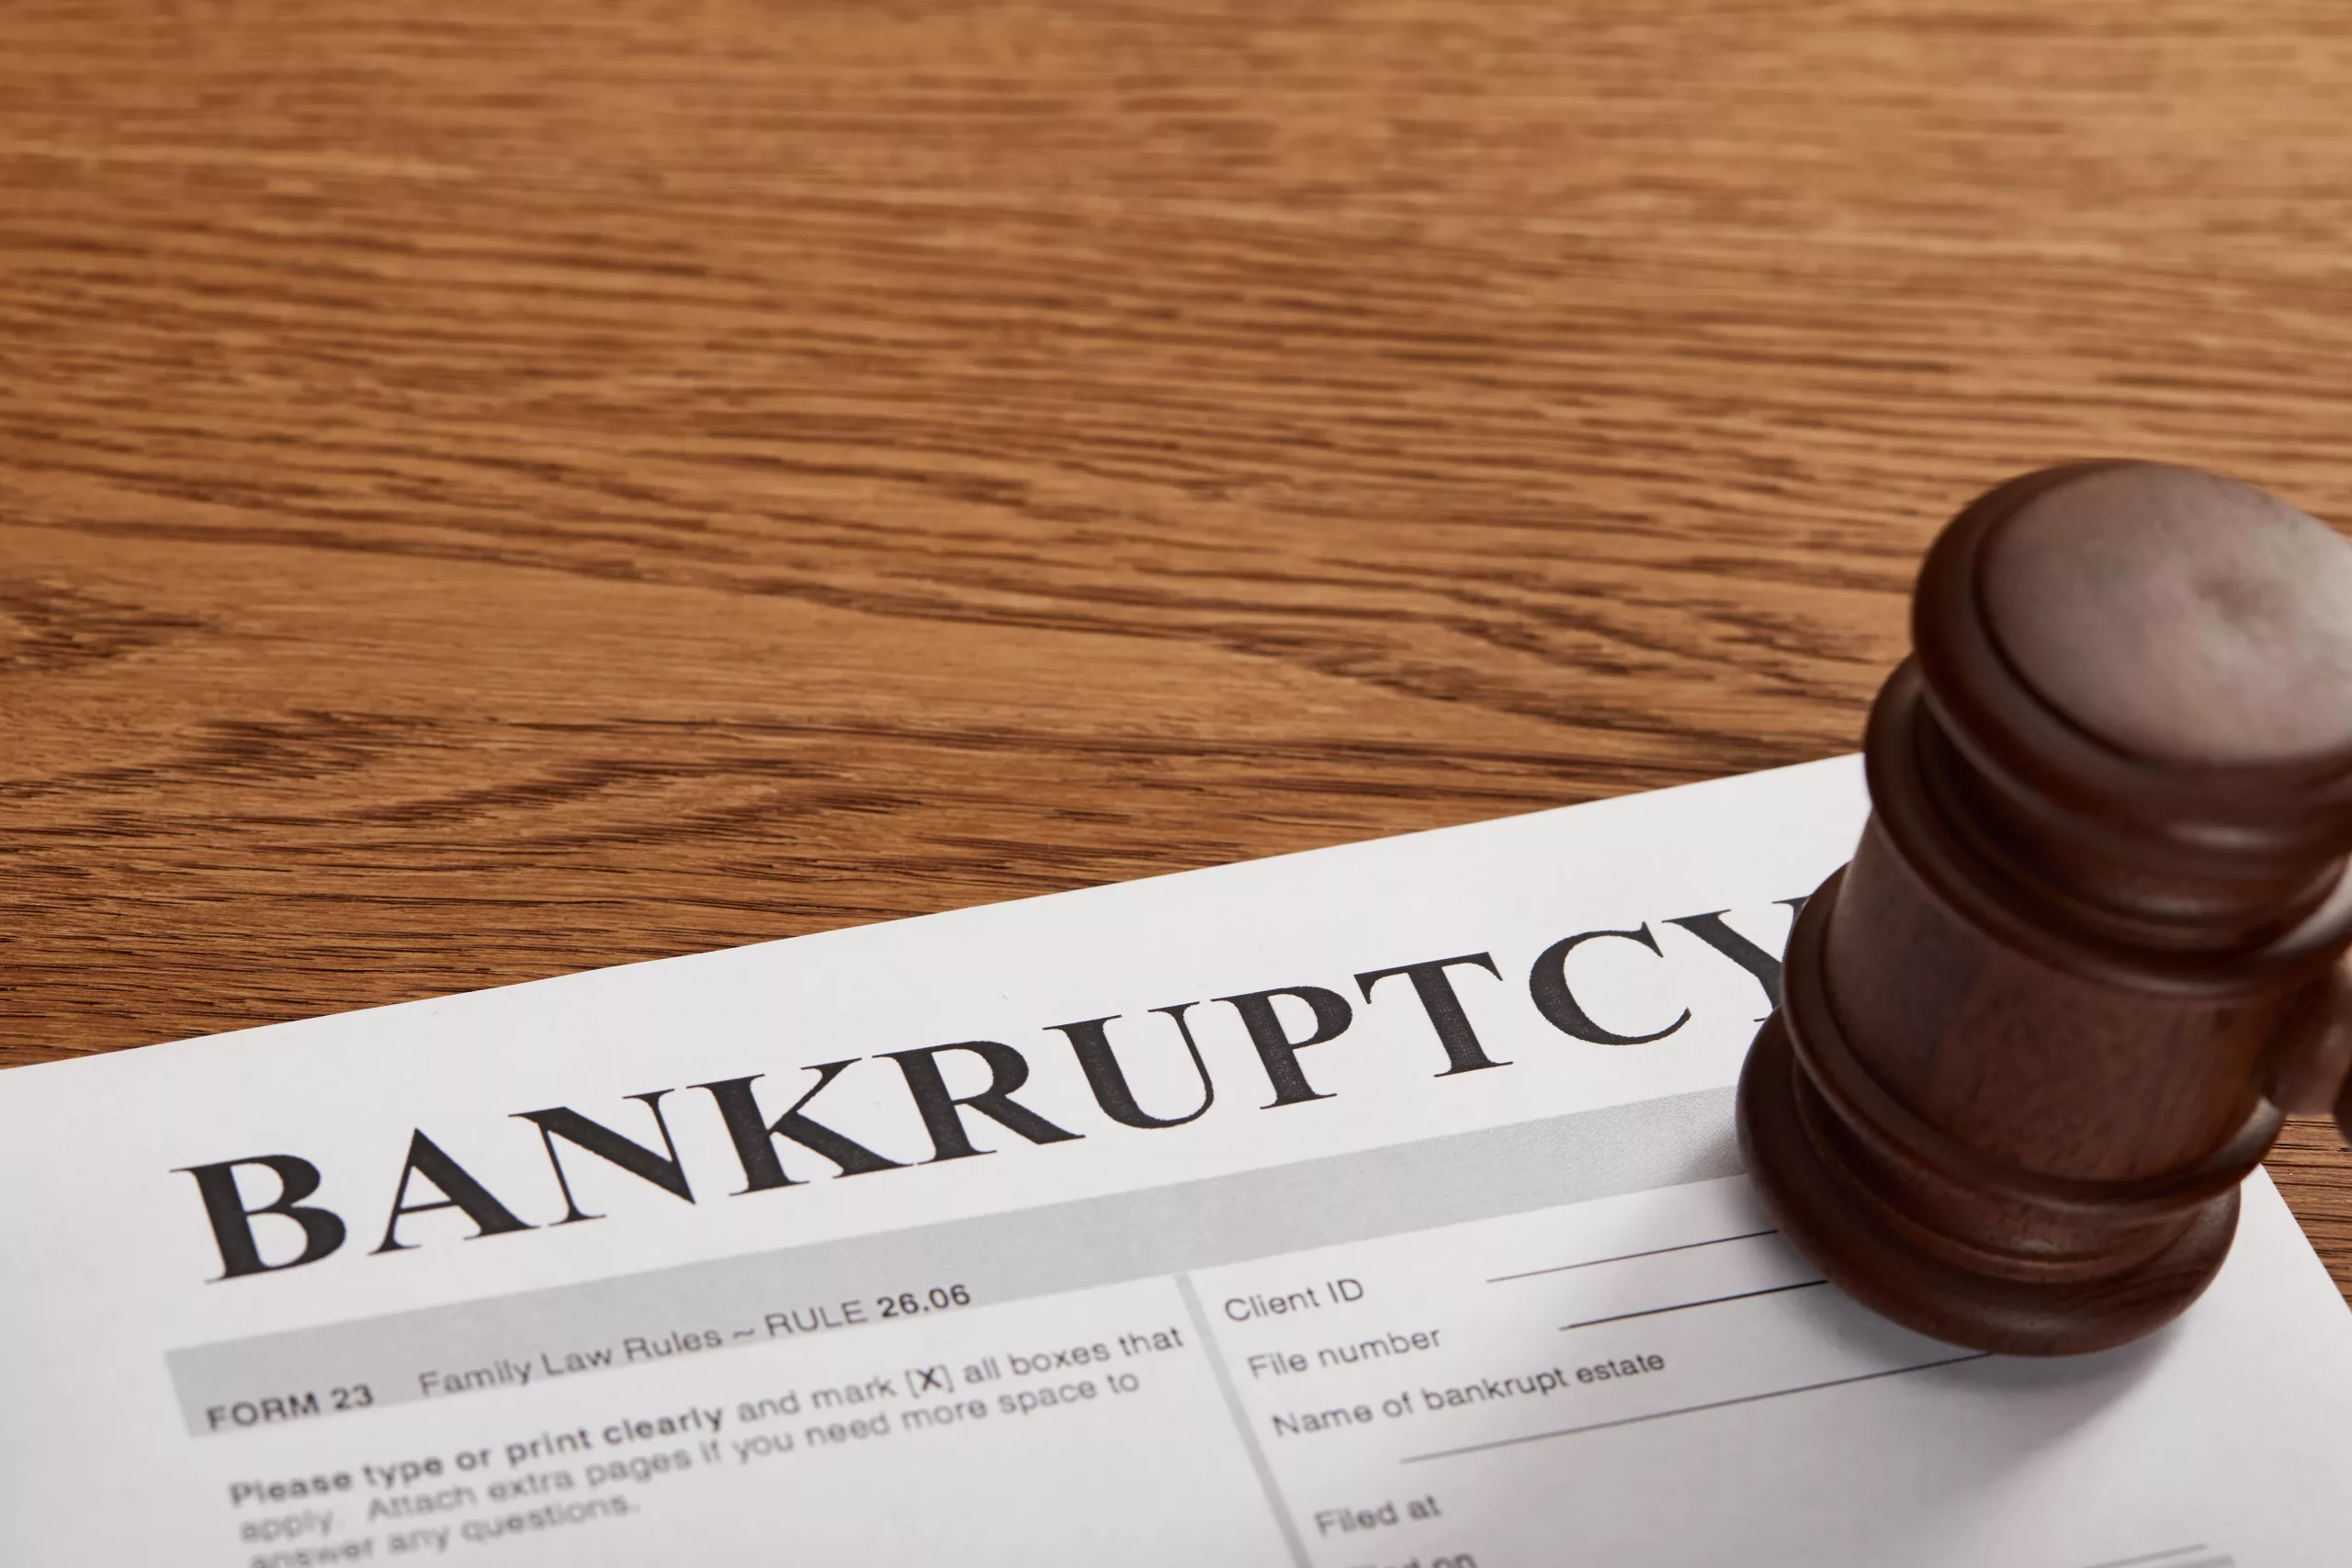 Bankruptcy cases dismissed without prejudice